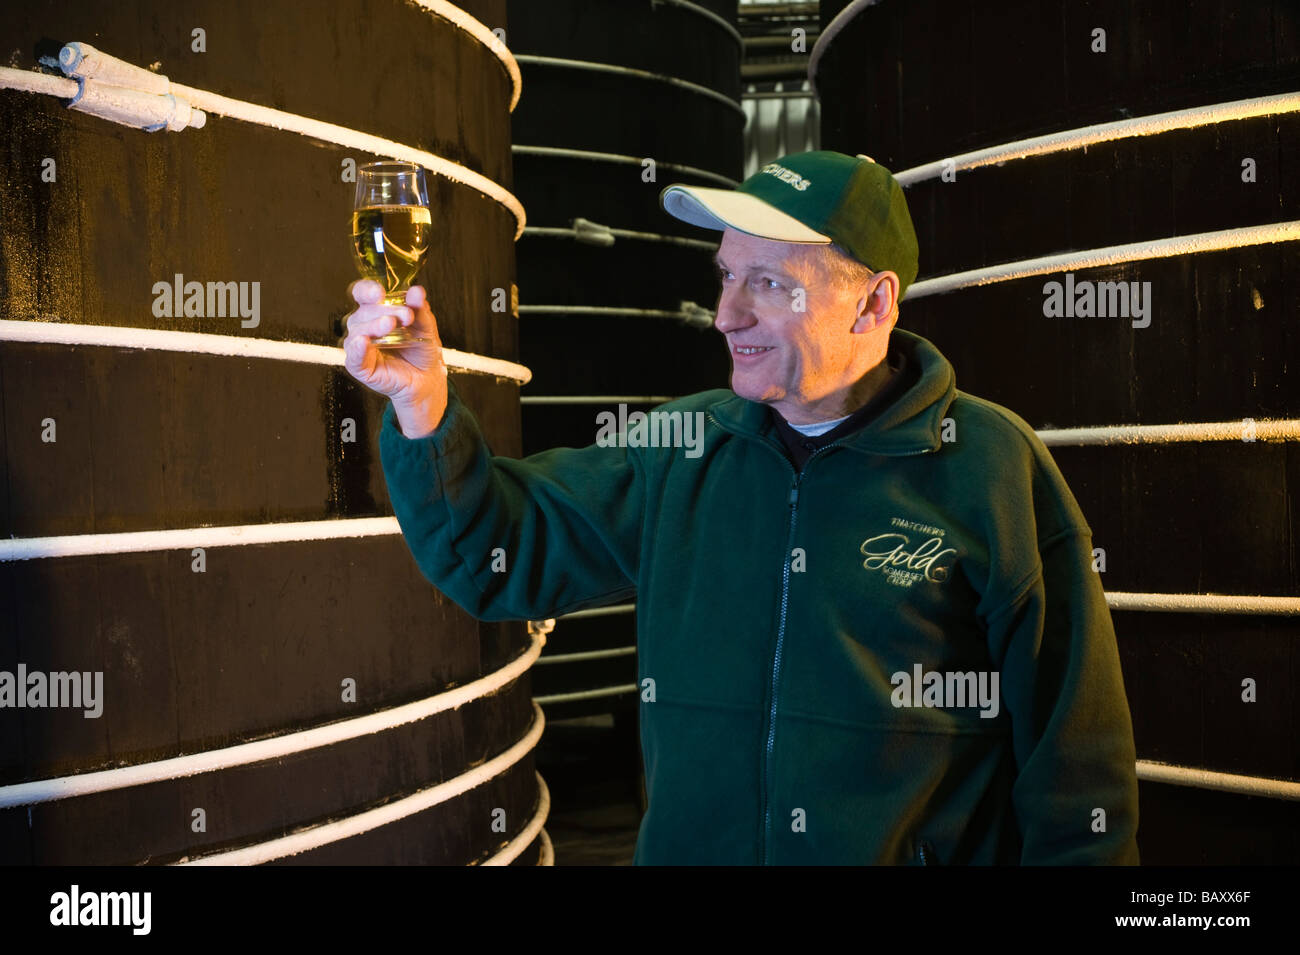 Worker checking cider amongst oak cider vats Thatchers Cider Sandford North Somerset England Stock Photo